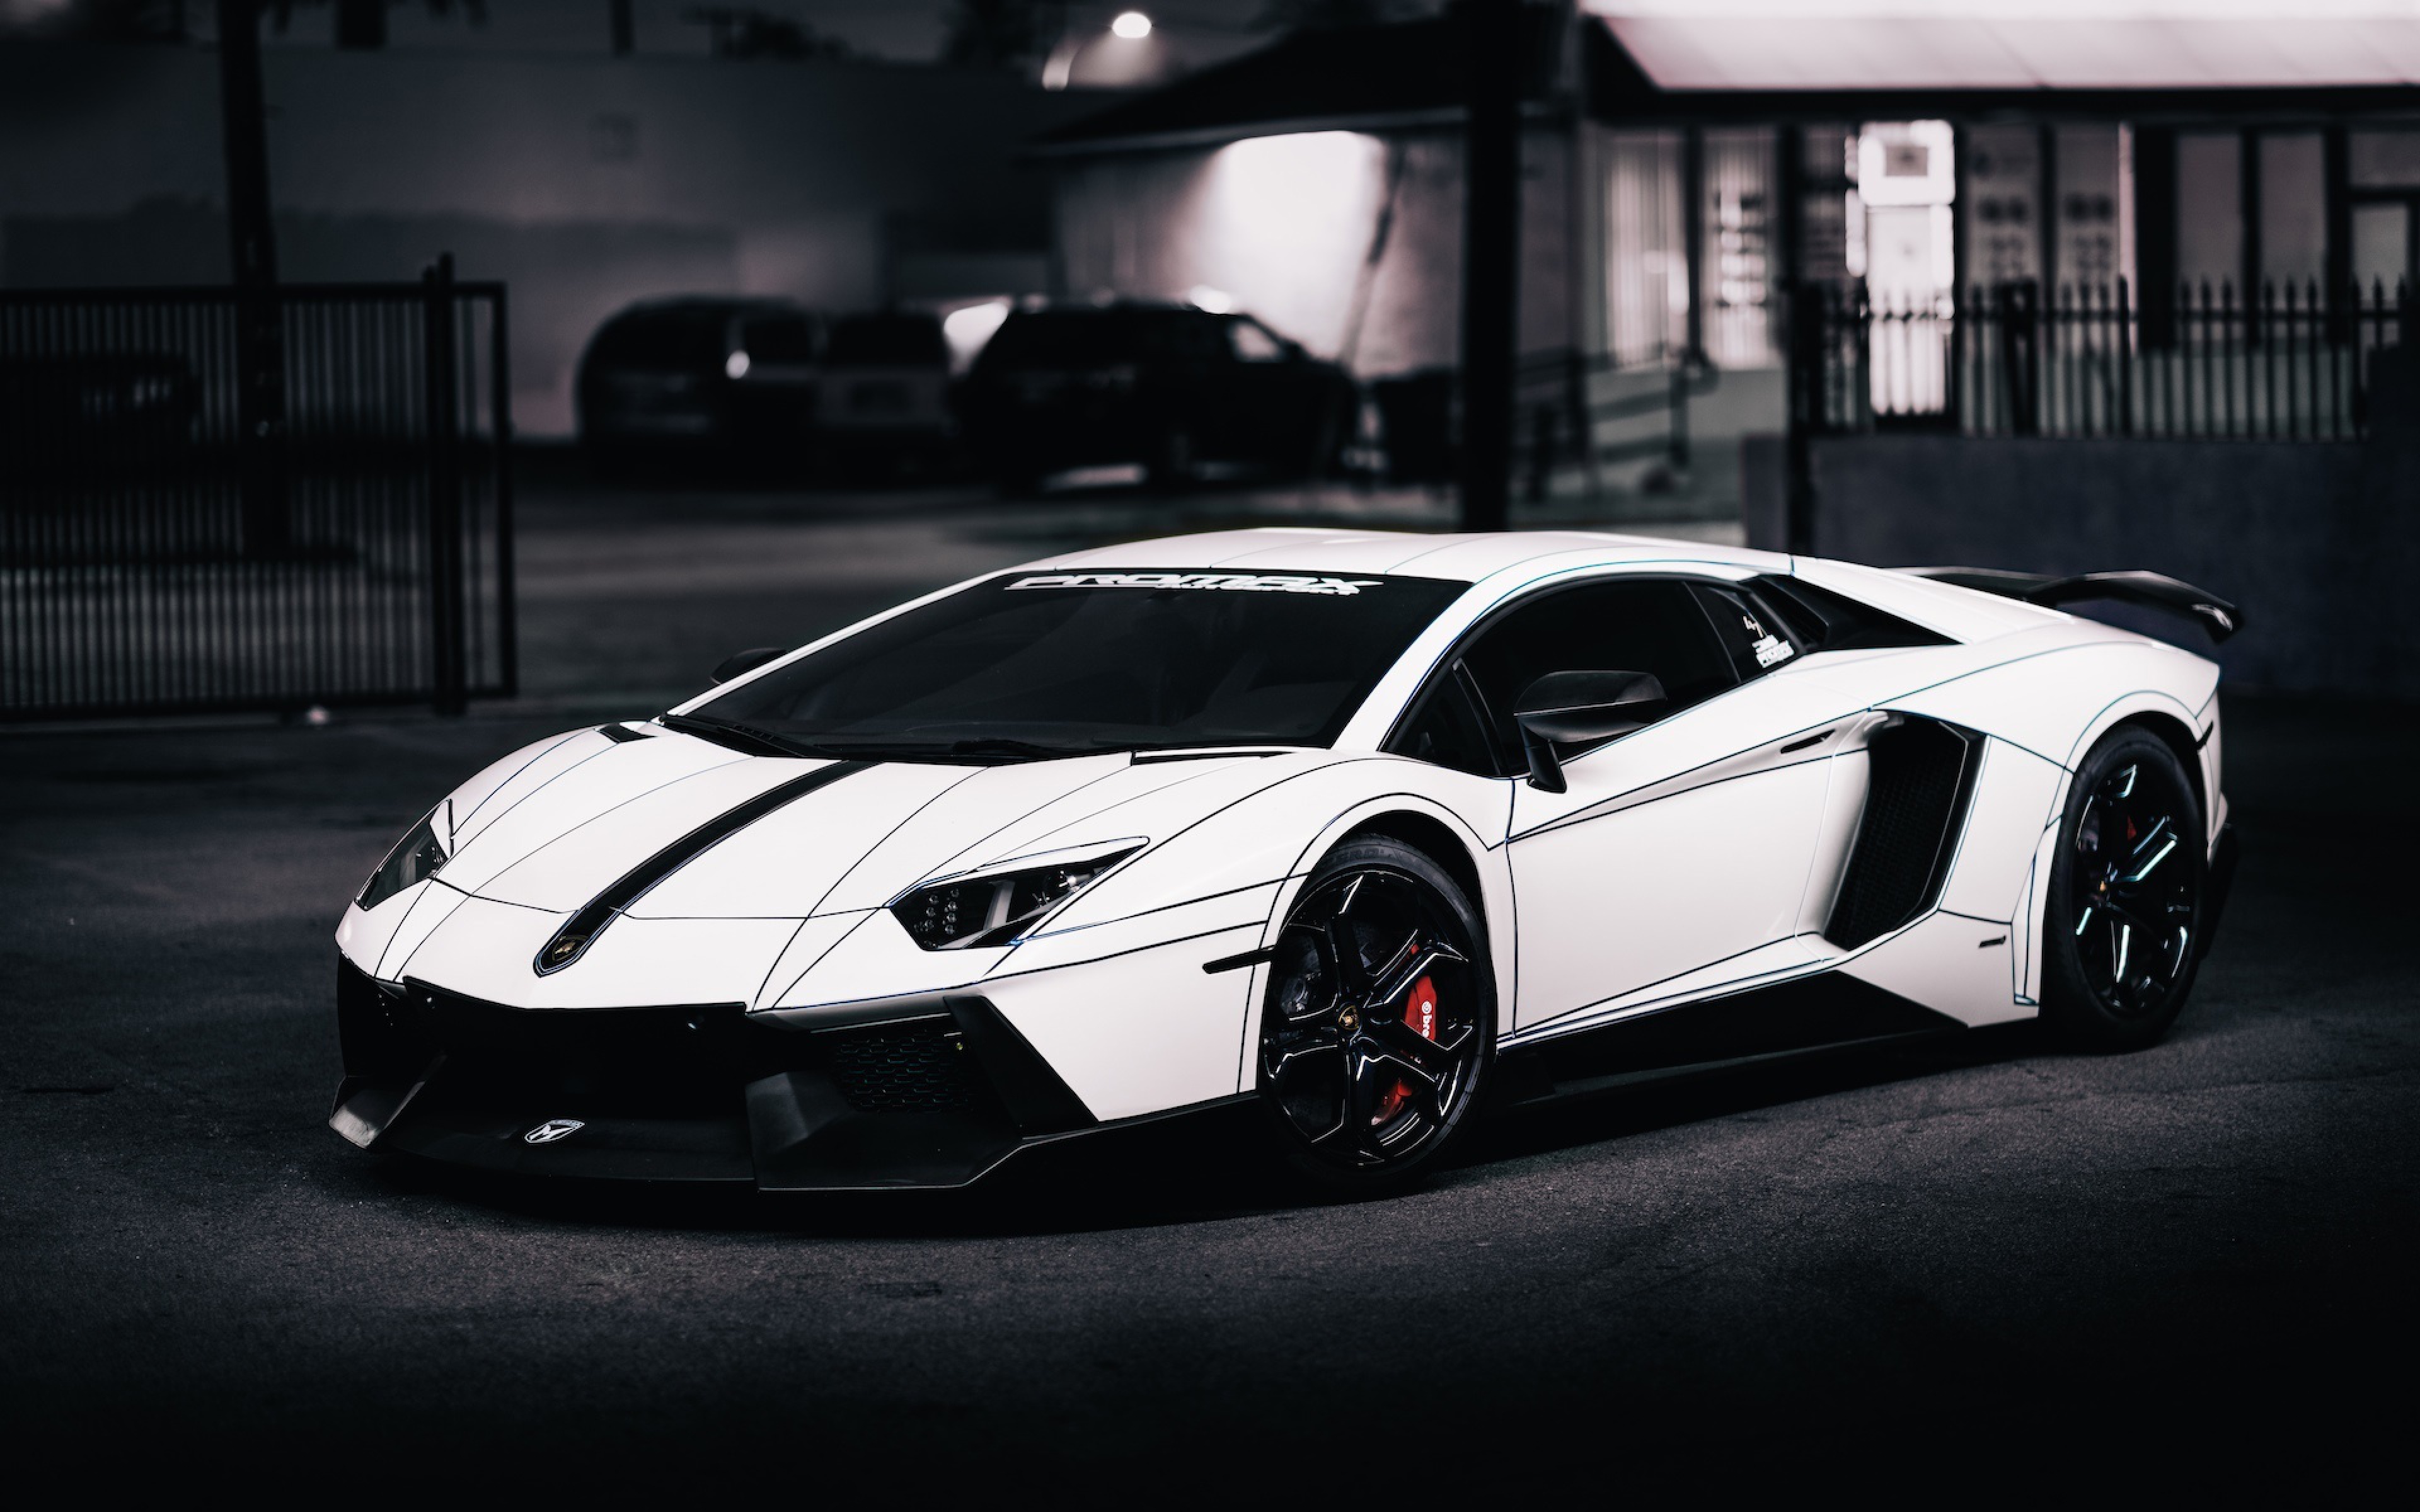 70+] White Lamborghini Wallpaper - WallpaperSafari